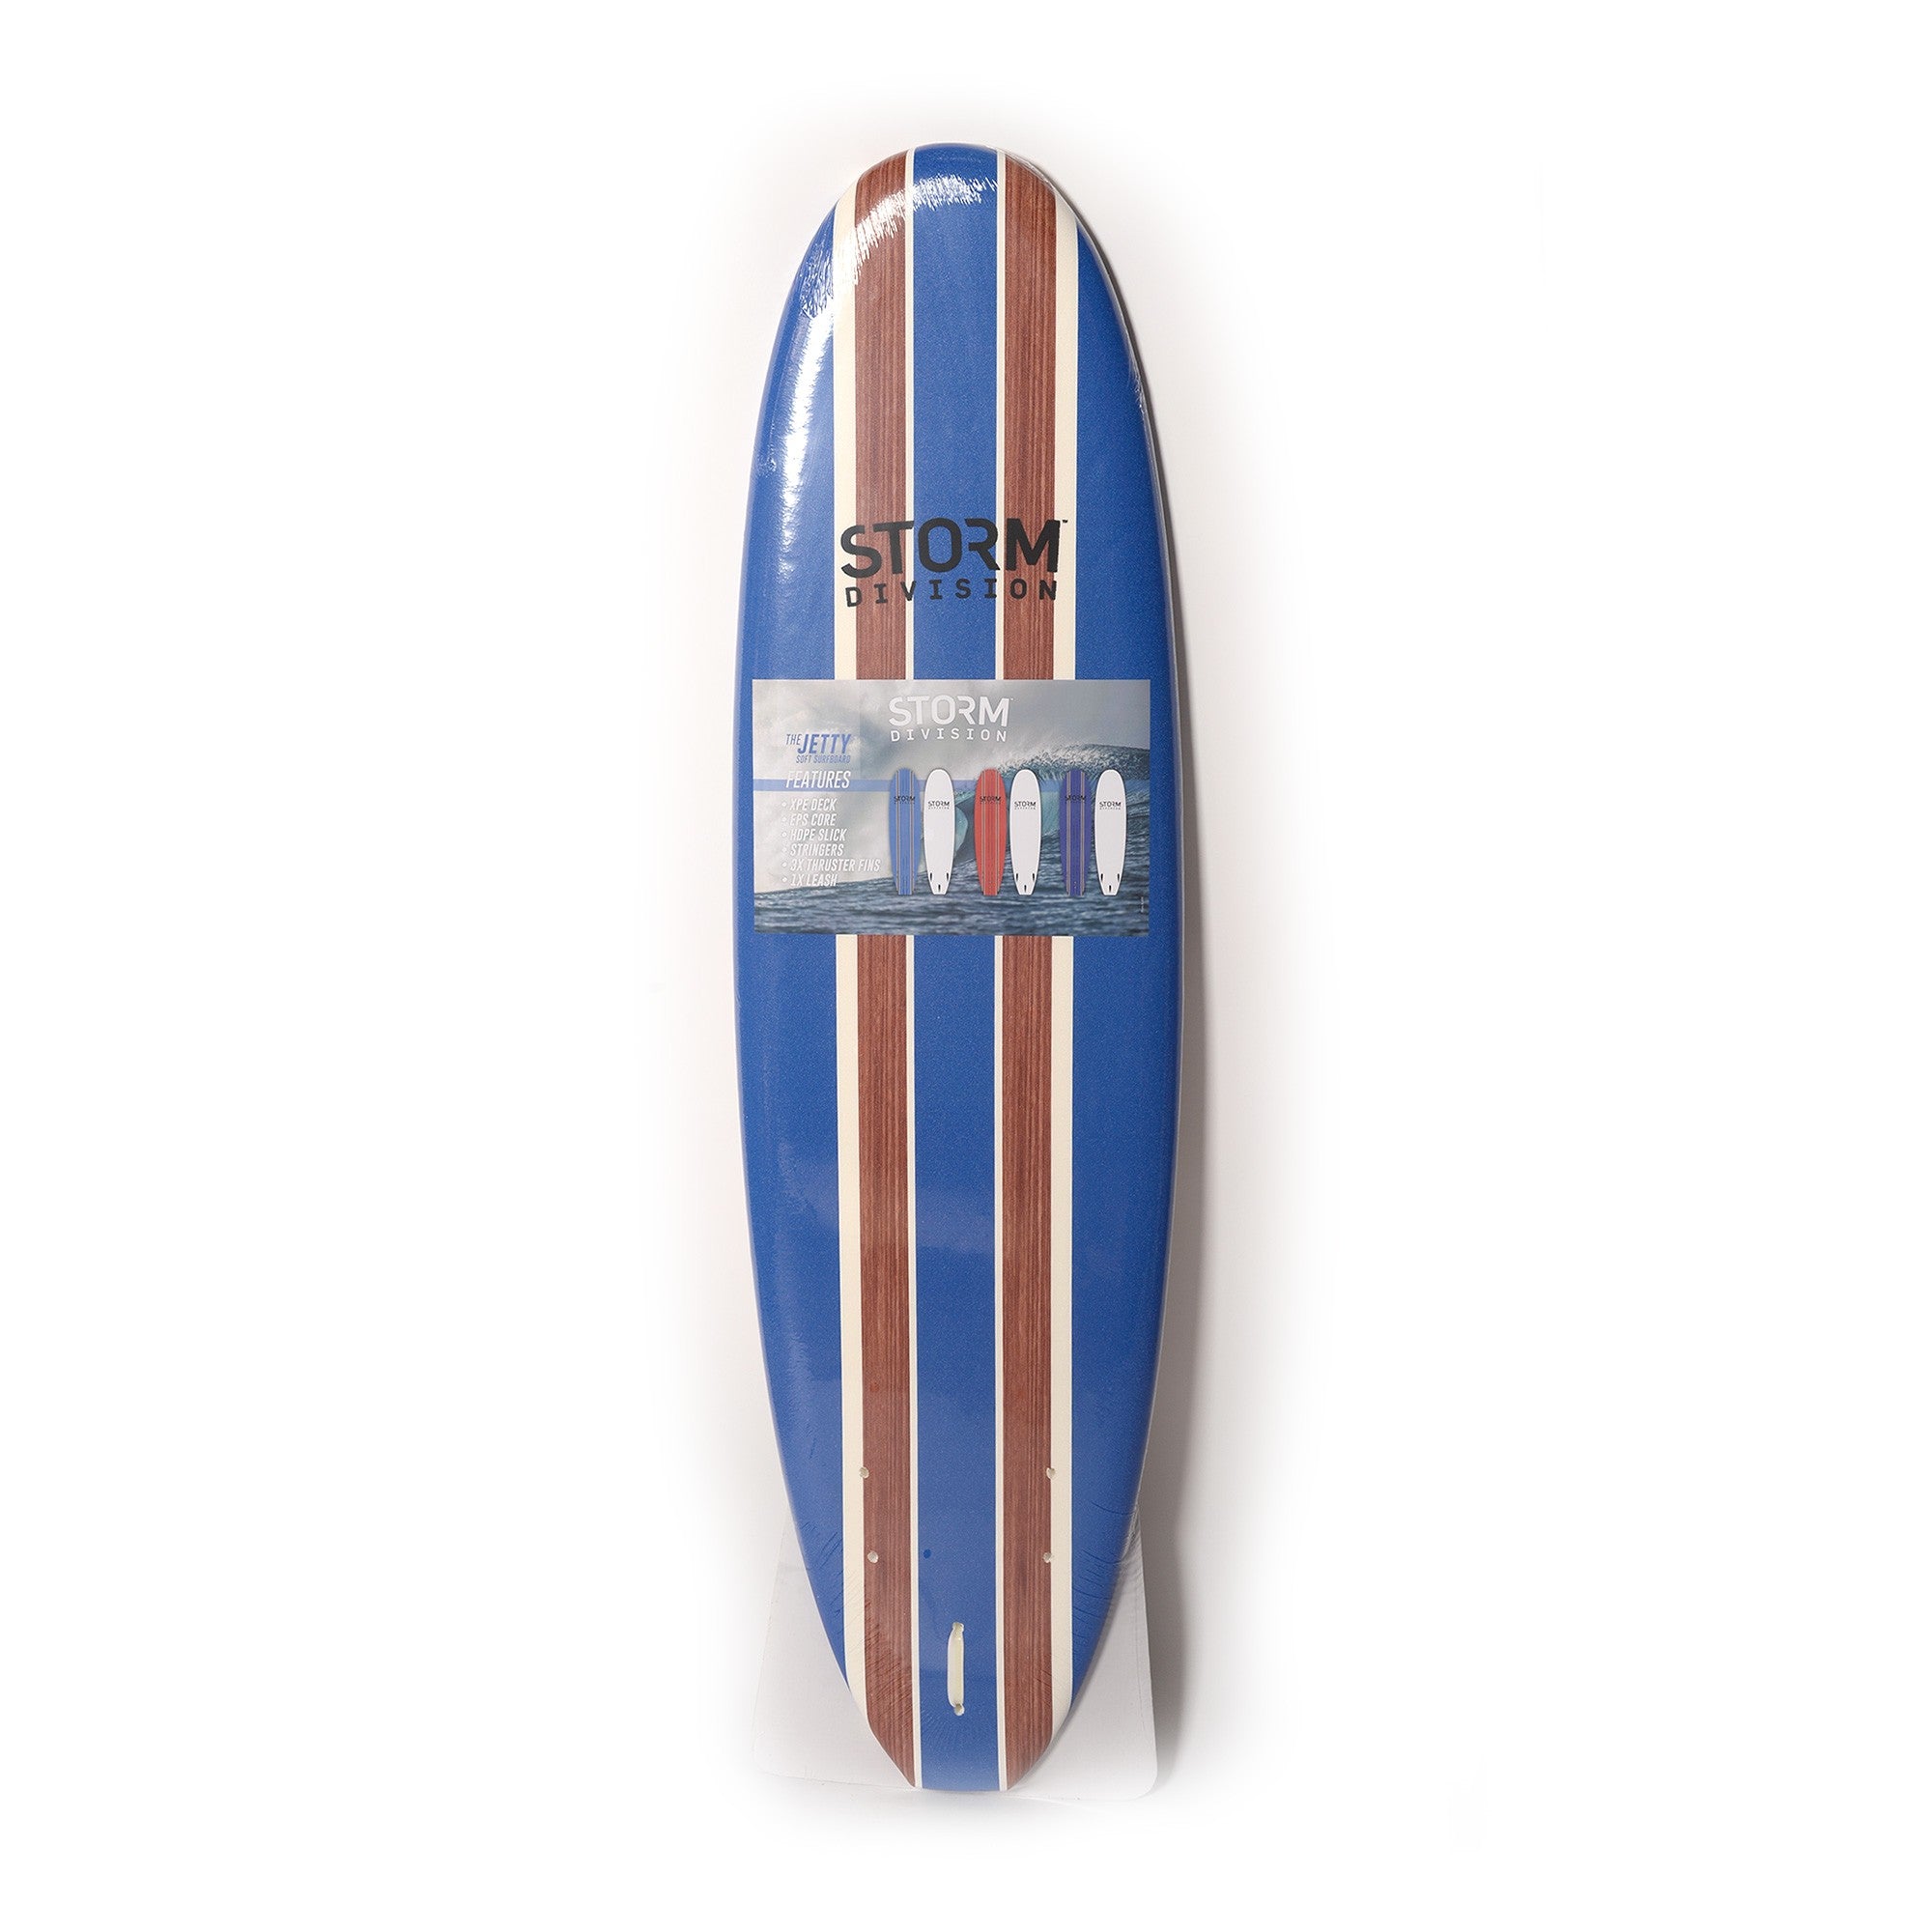 STORM DIVISION - Jetty Softboard - Planche de surf en Mousse - 6'2 - Dark blue